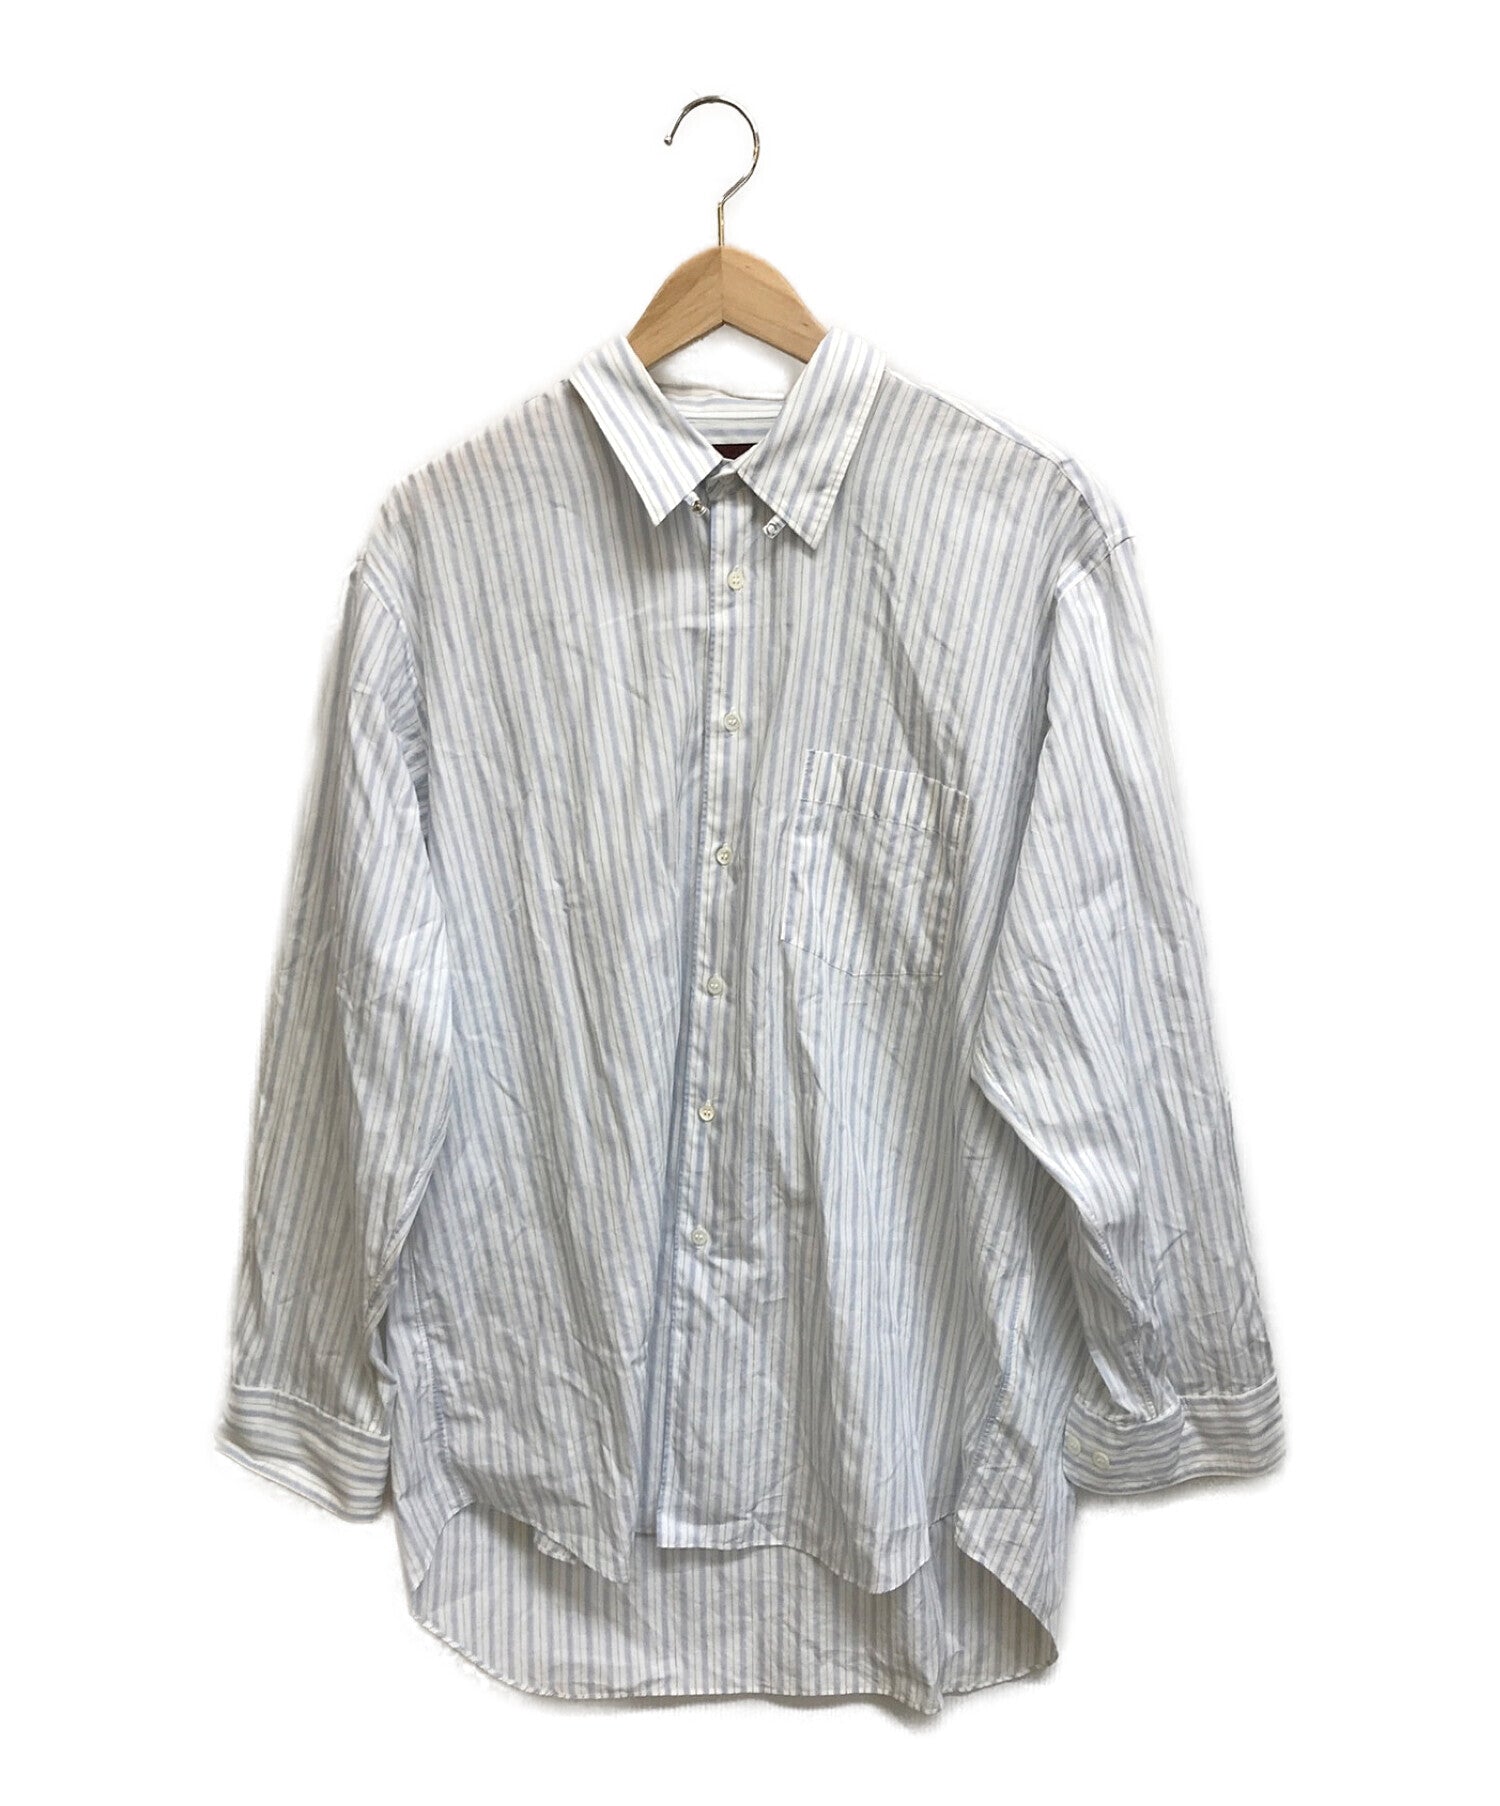 【日本産】COMME des GARCONS SHIRT オールド 縦柄 バイアスポケット ビッグシャツ フランス製 シャツジャケット ブルゾン 90s ストライプ Lサイズ以上